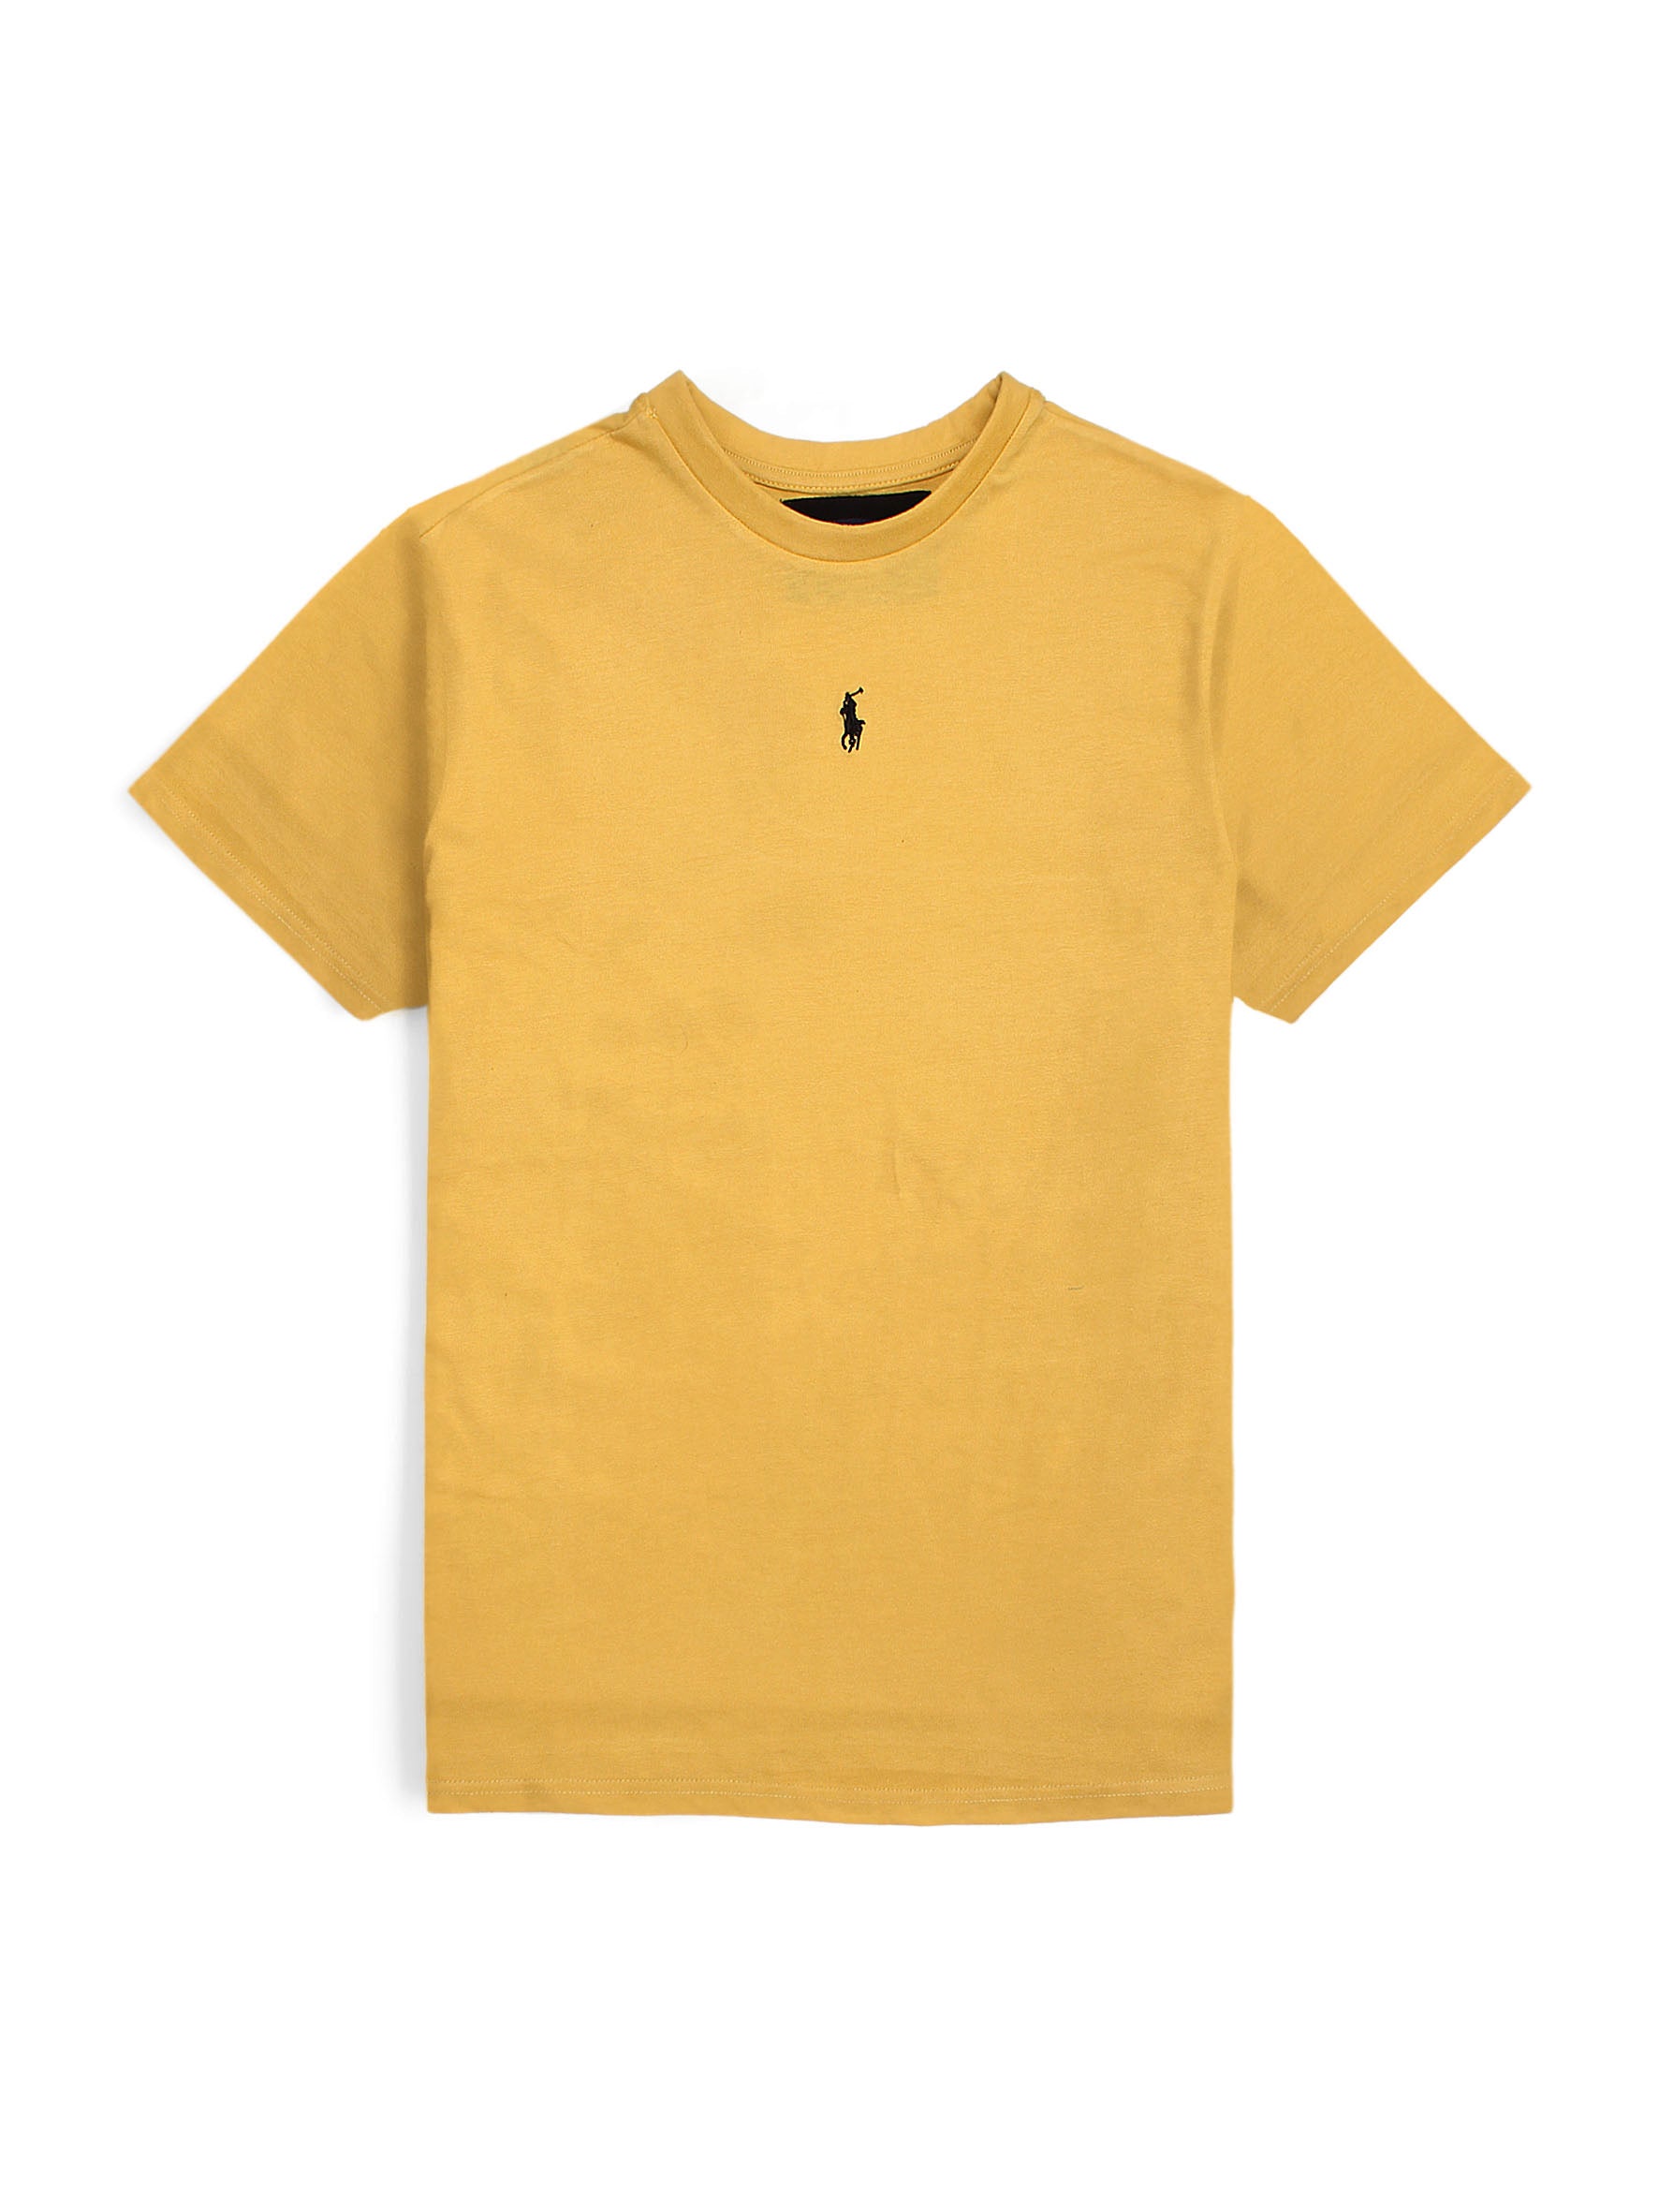 RL Basic soft cotton yellow T-Shirt (00314)